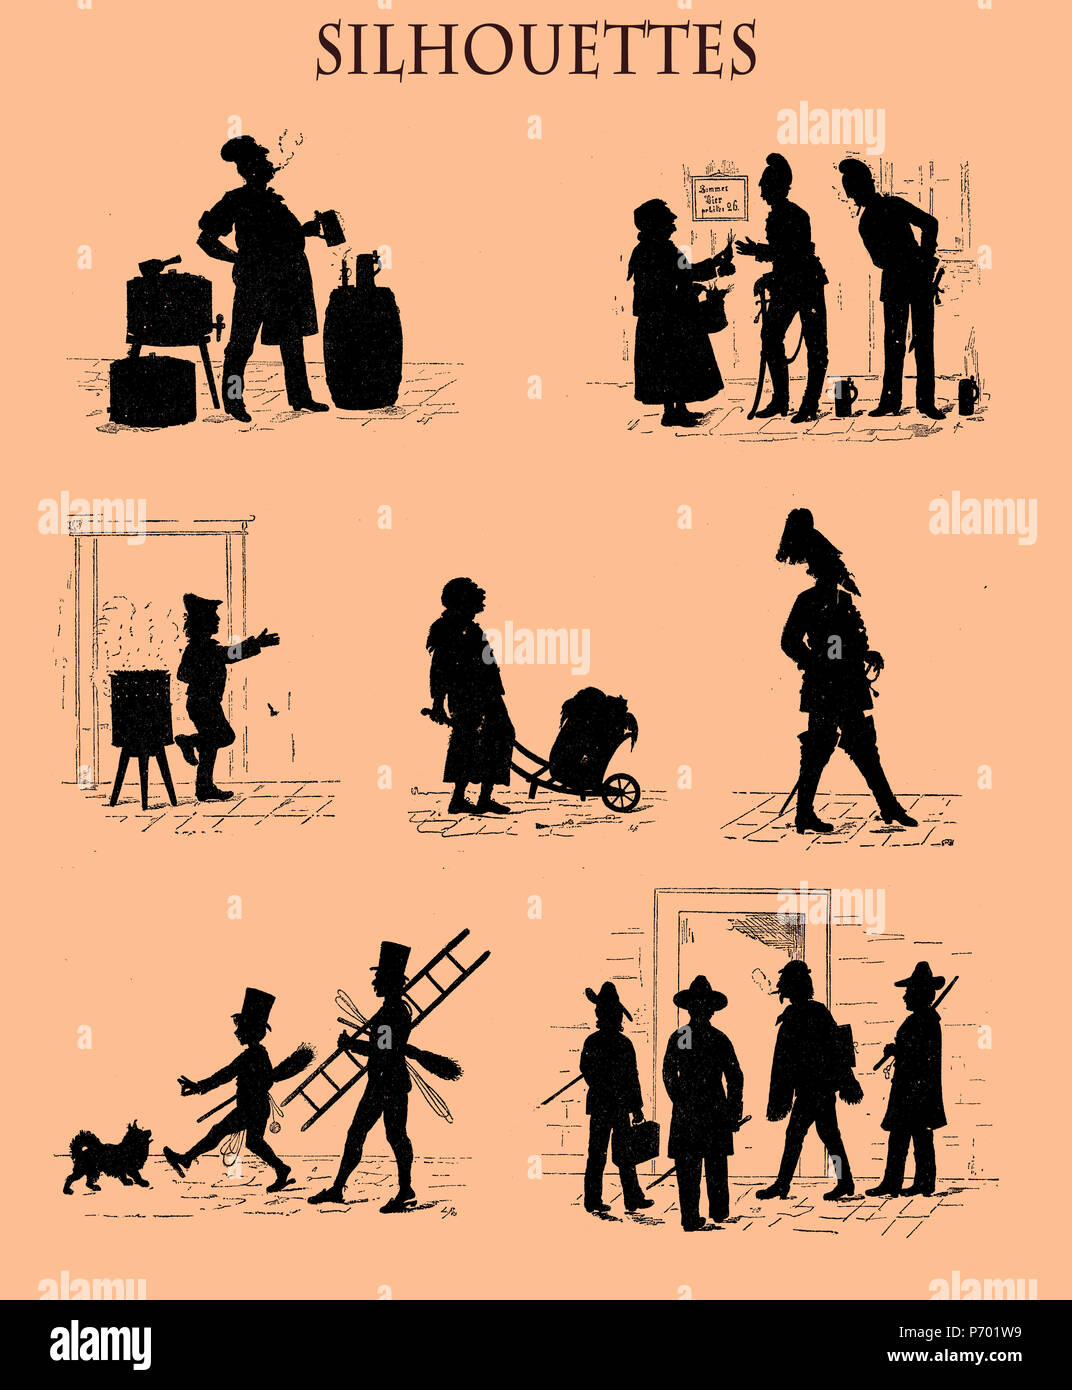 La caricature des silhouettes en noir à partir d'un magazine suisse du 19e siècle représentant avec humour la vie de rue portraits dans la ville de Munich : les étudiants des beaux-arts, l'ramoneurs, le brasseur, le gendarme, les vendeurs de rue Banque D'Images